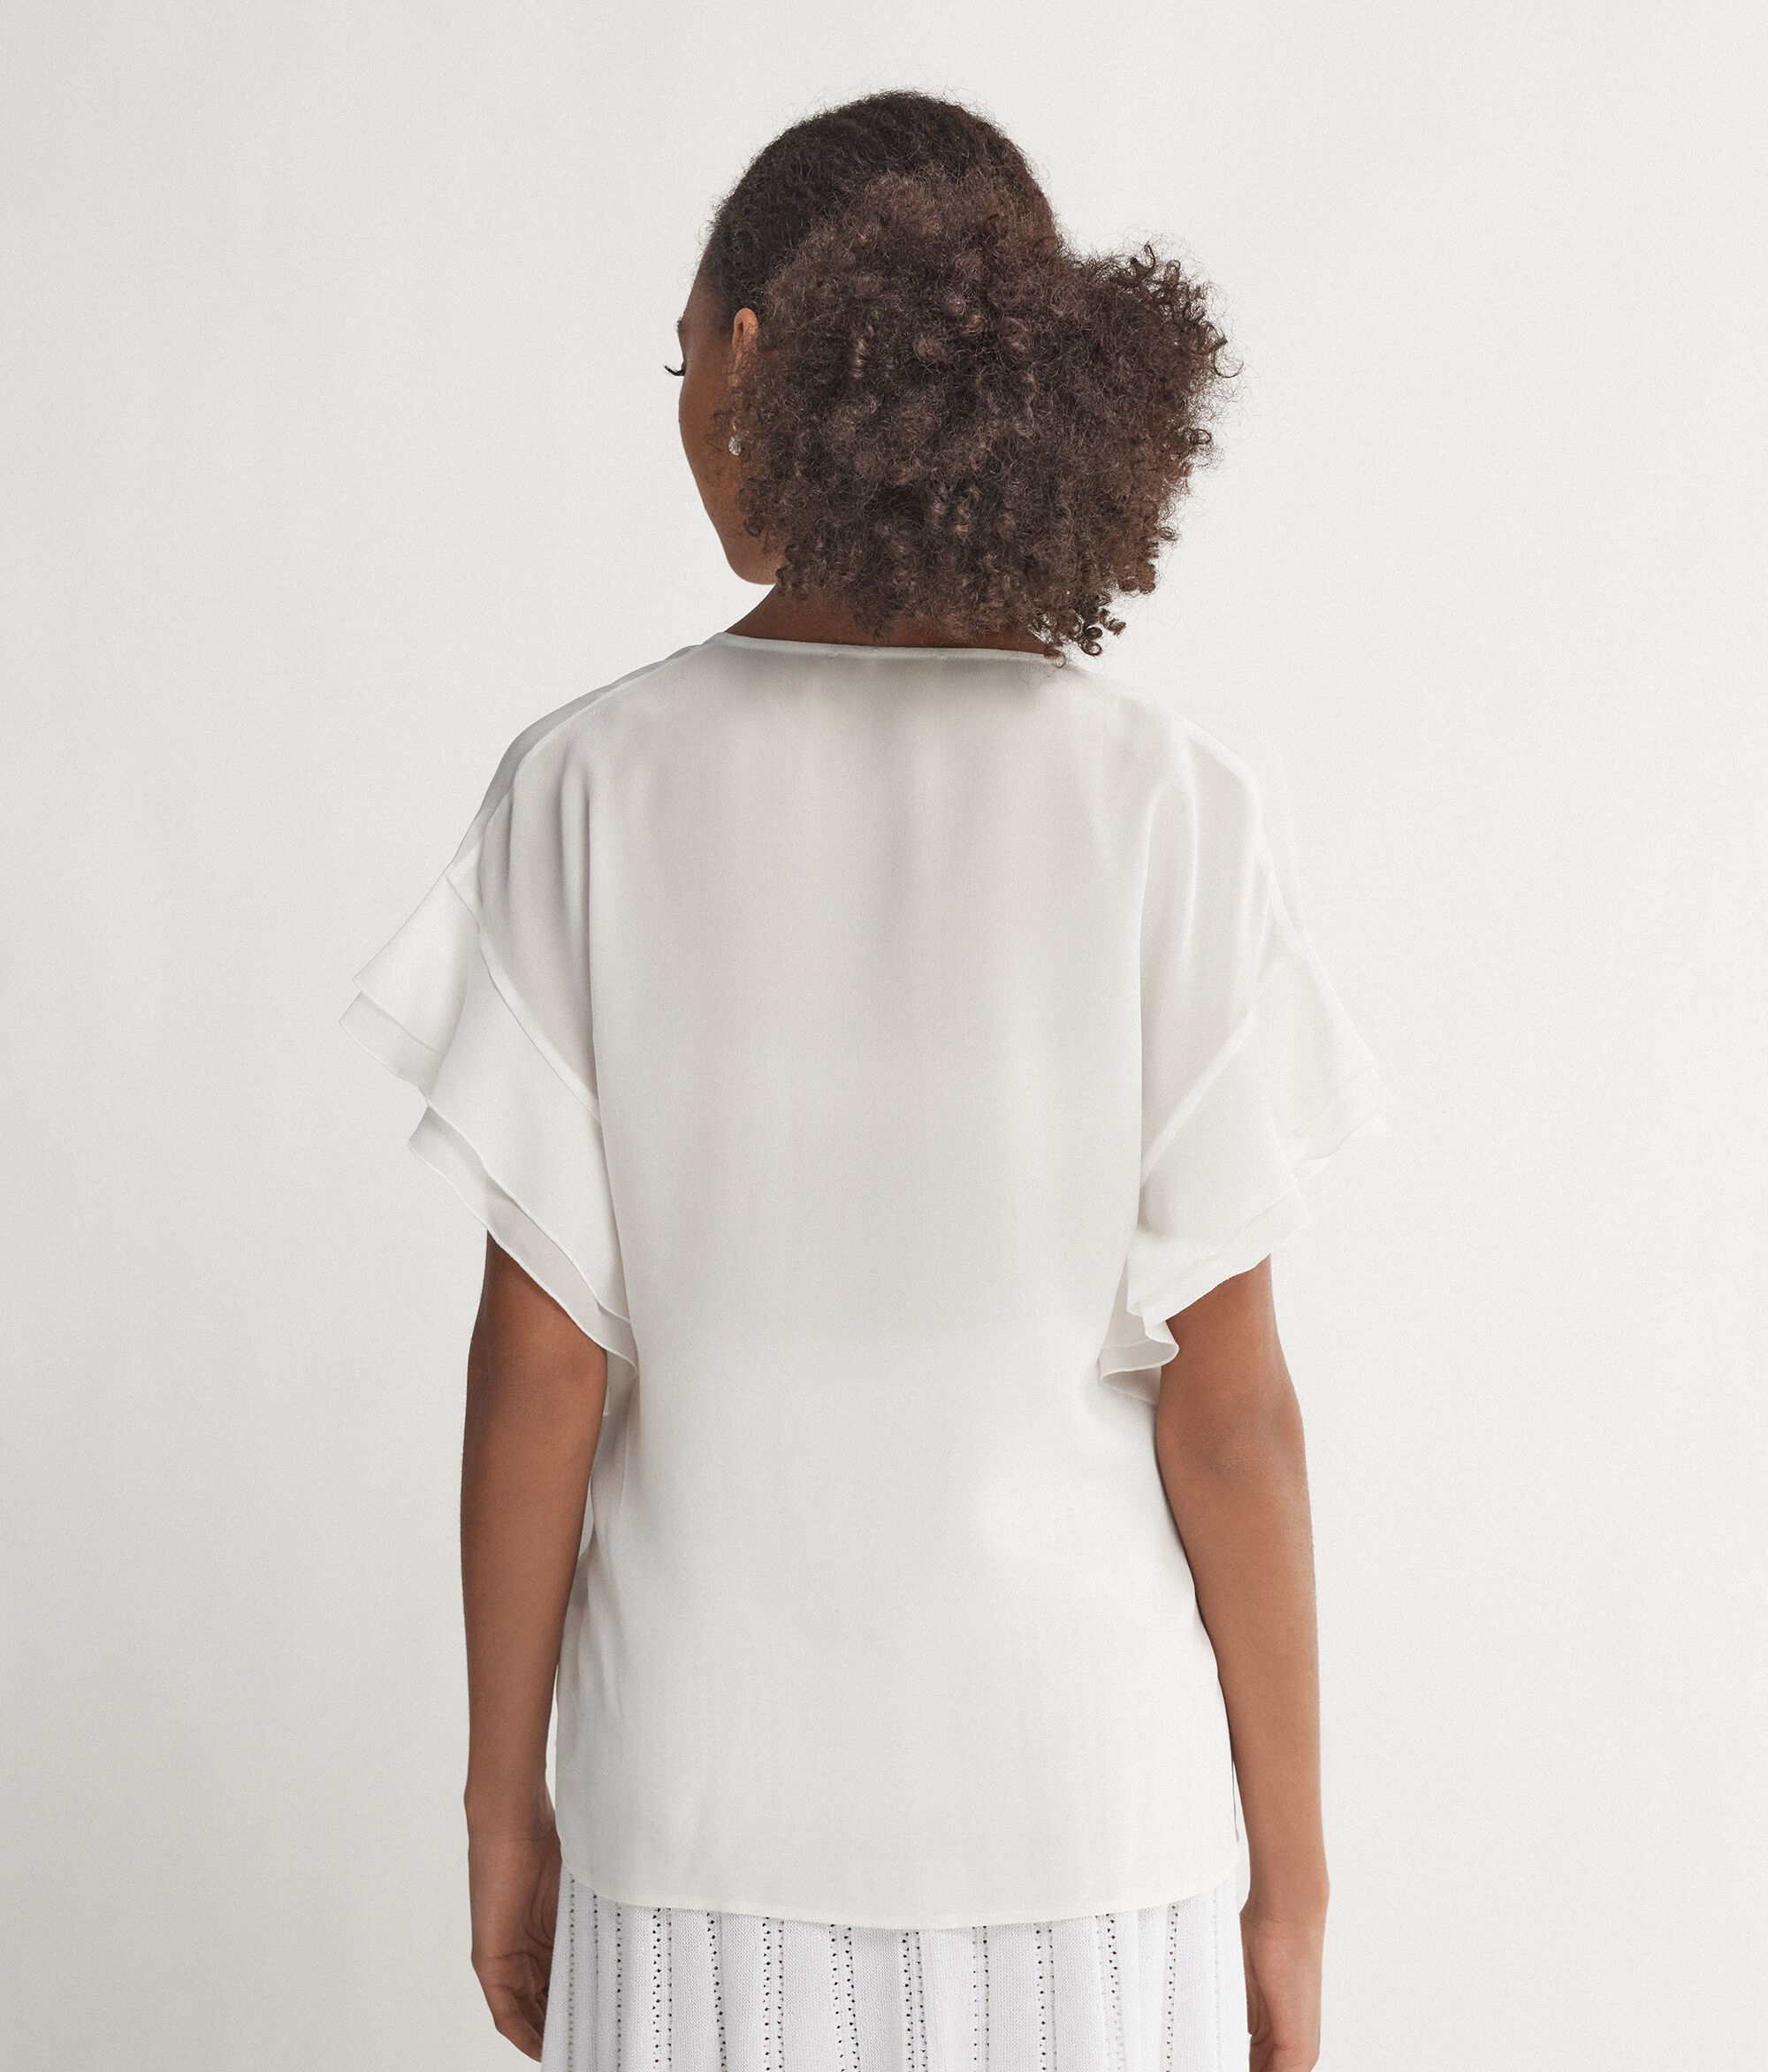 Шёлковая рубашка с V-образным вырезом горловины, коротким рукавом и рюшами